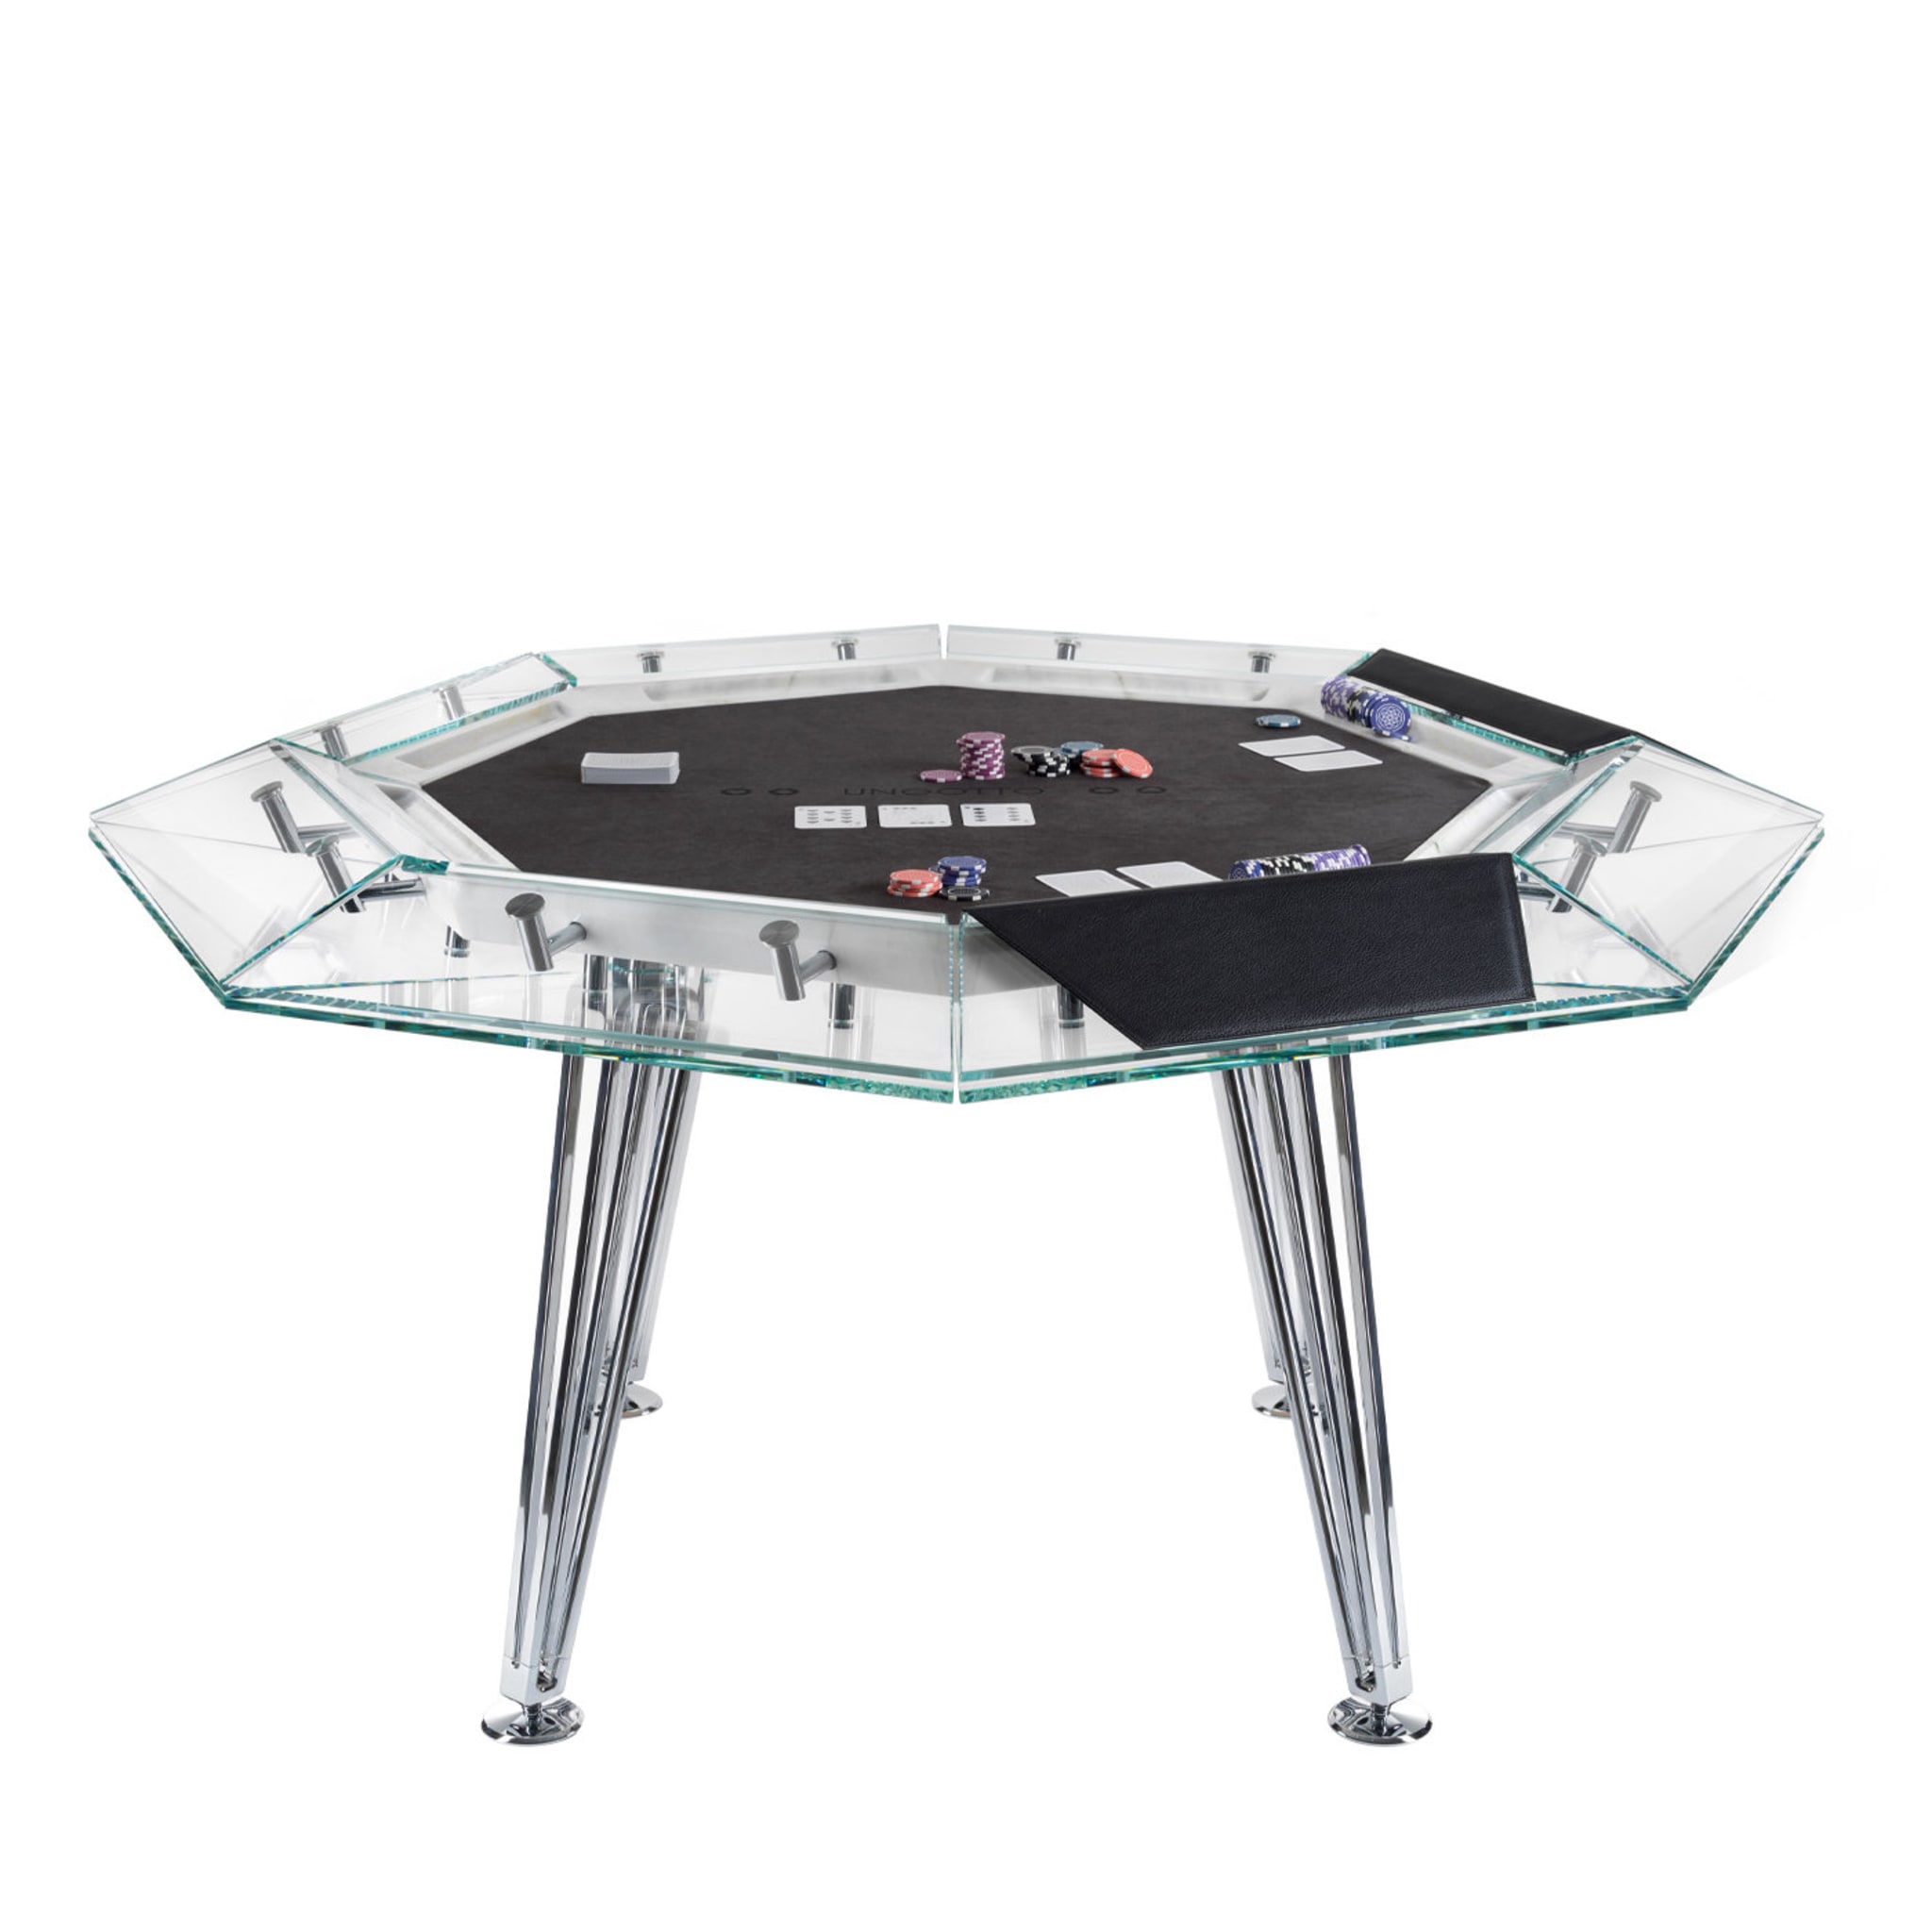 Unootto 8 Player Marble Edition Poker Table - Vista principale